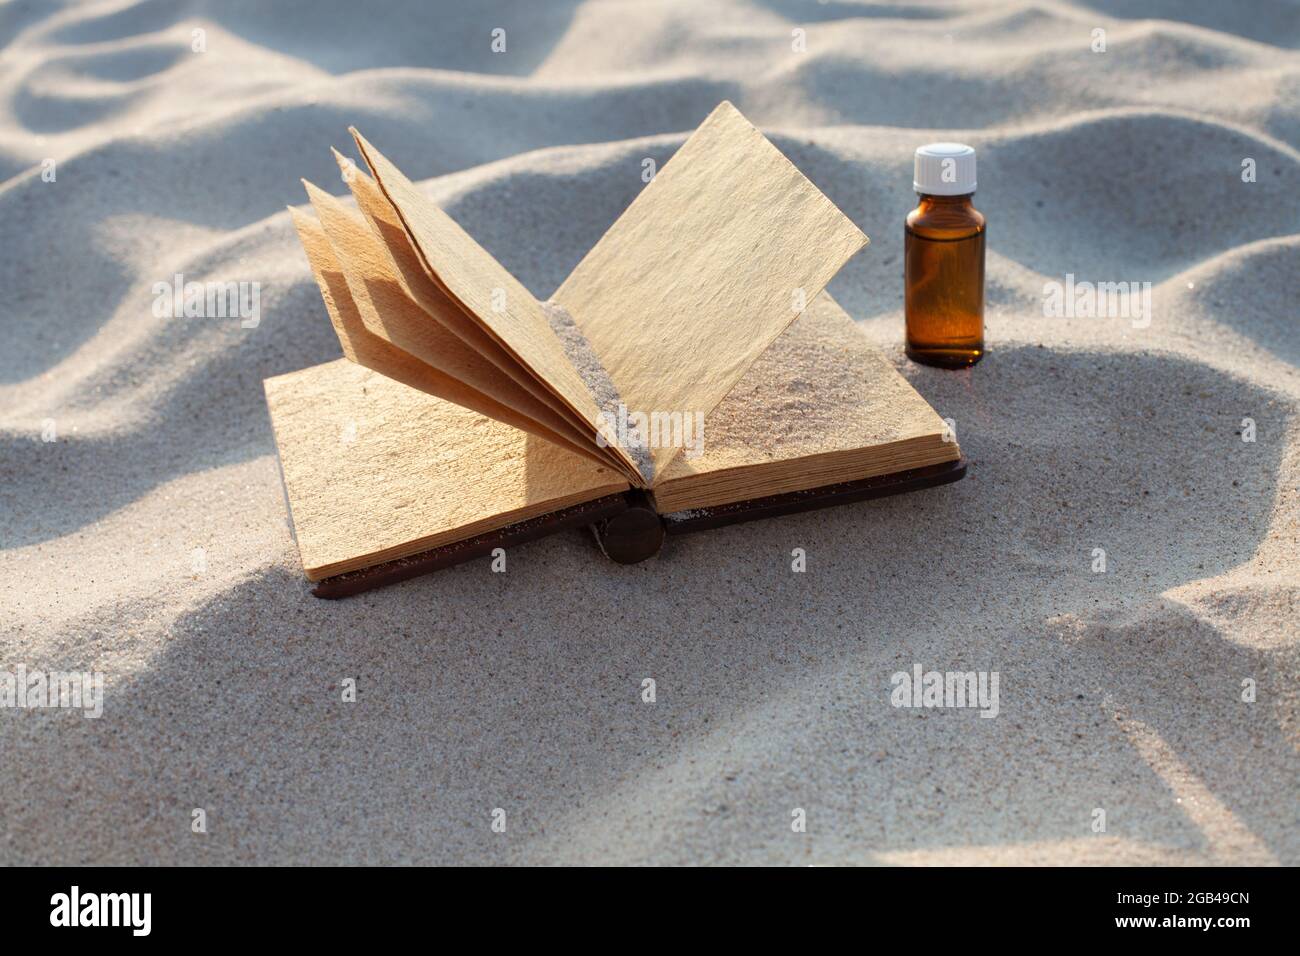 Öffnen Sie ein Vintage-Buch mit Muscheln auf dem Sand. Flasche auf Sand,  Platz für Text, leeres Papier. Speicherplatz kopieren Stockfotografie -  Alamy